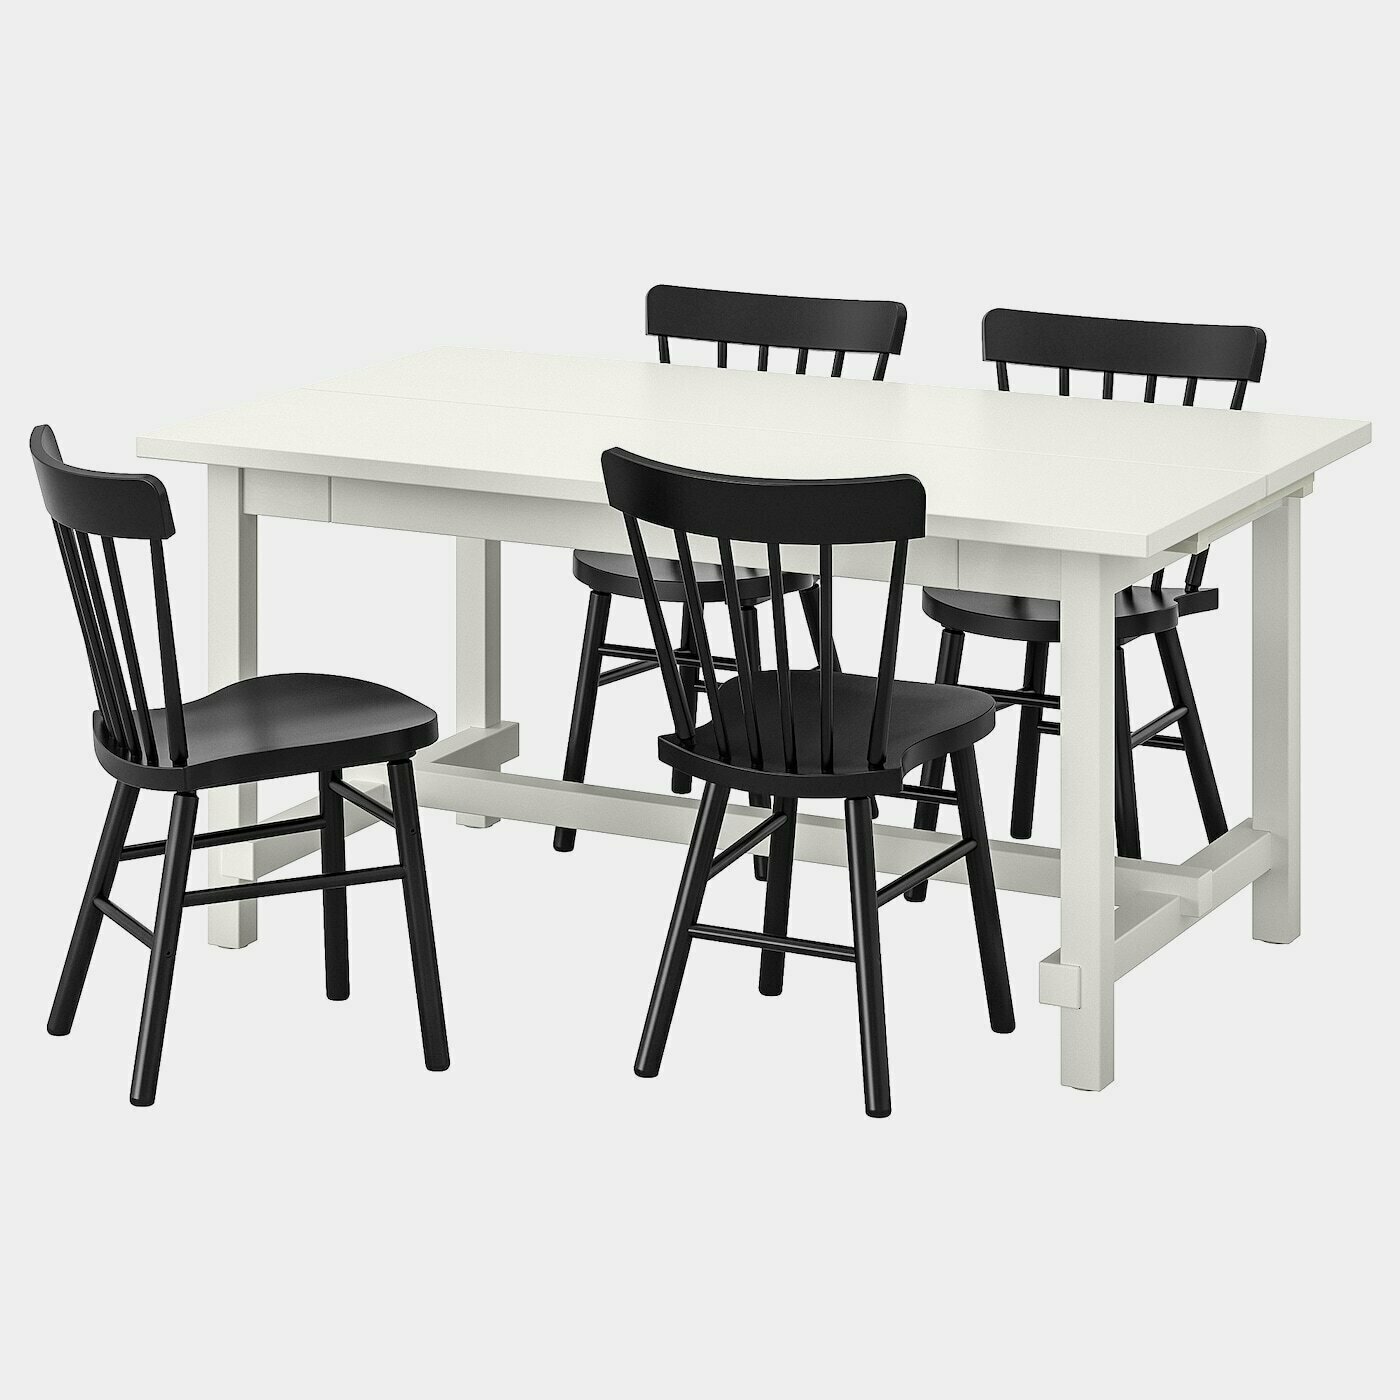 NORDVIKEN / NORRARYD Tisch und 4 Stühle  - Essplatzgruppe - Möbel Ideen für dein Zuhause von Home Trends. Möbel Trends von Social Media Influencer für dein Skandi Zuhause.